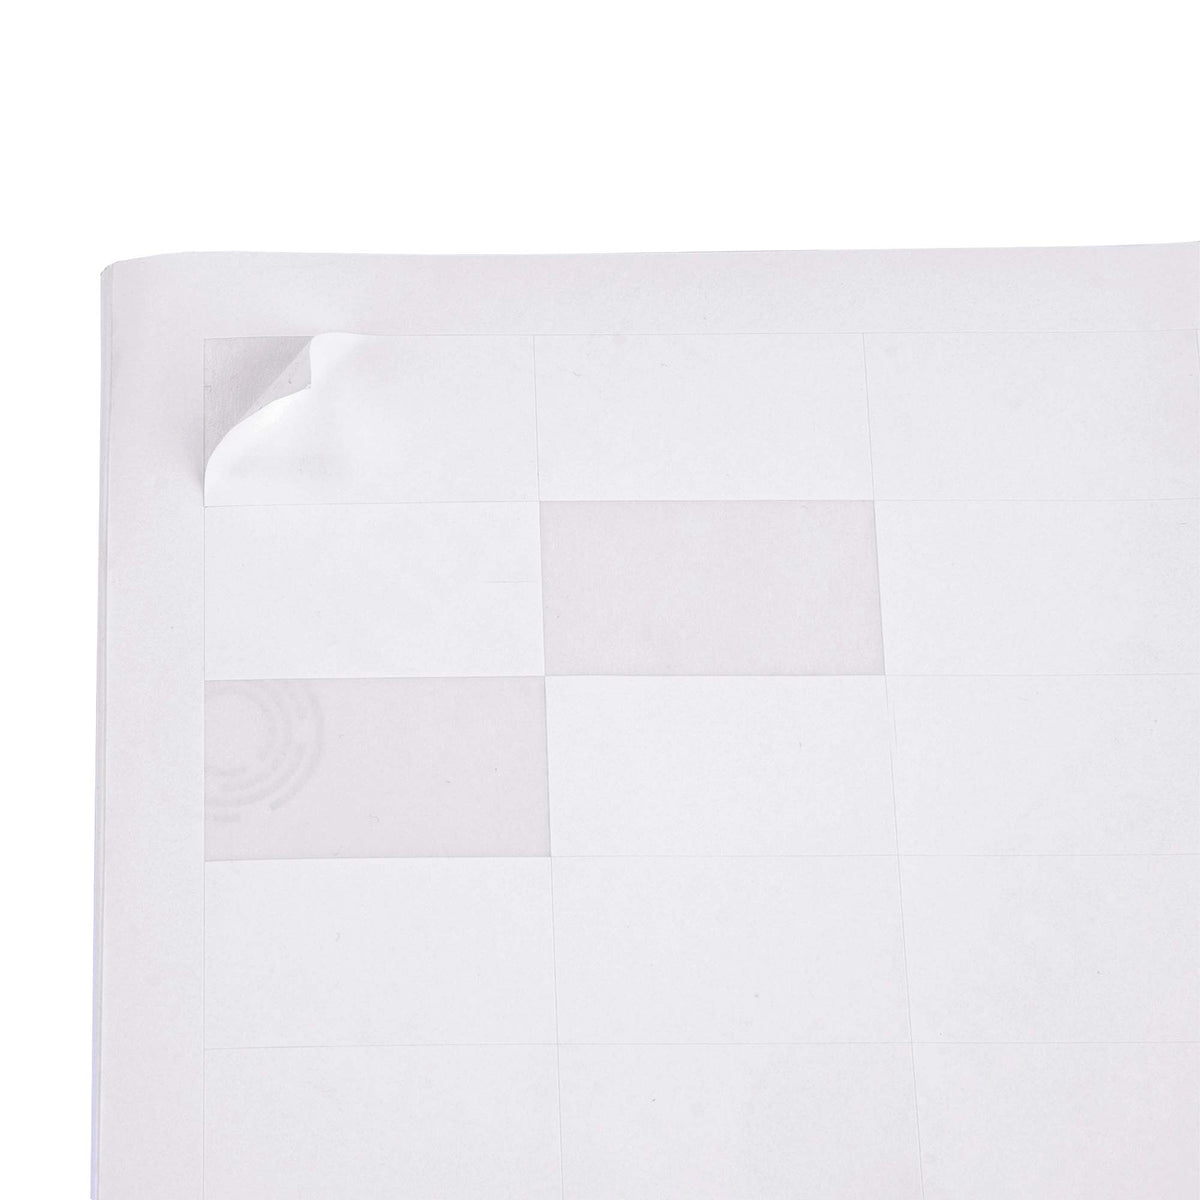 Selbstklebende Etiketten auf A4-Blättern 38x21,2mm 100 Blatt